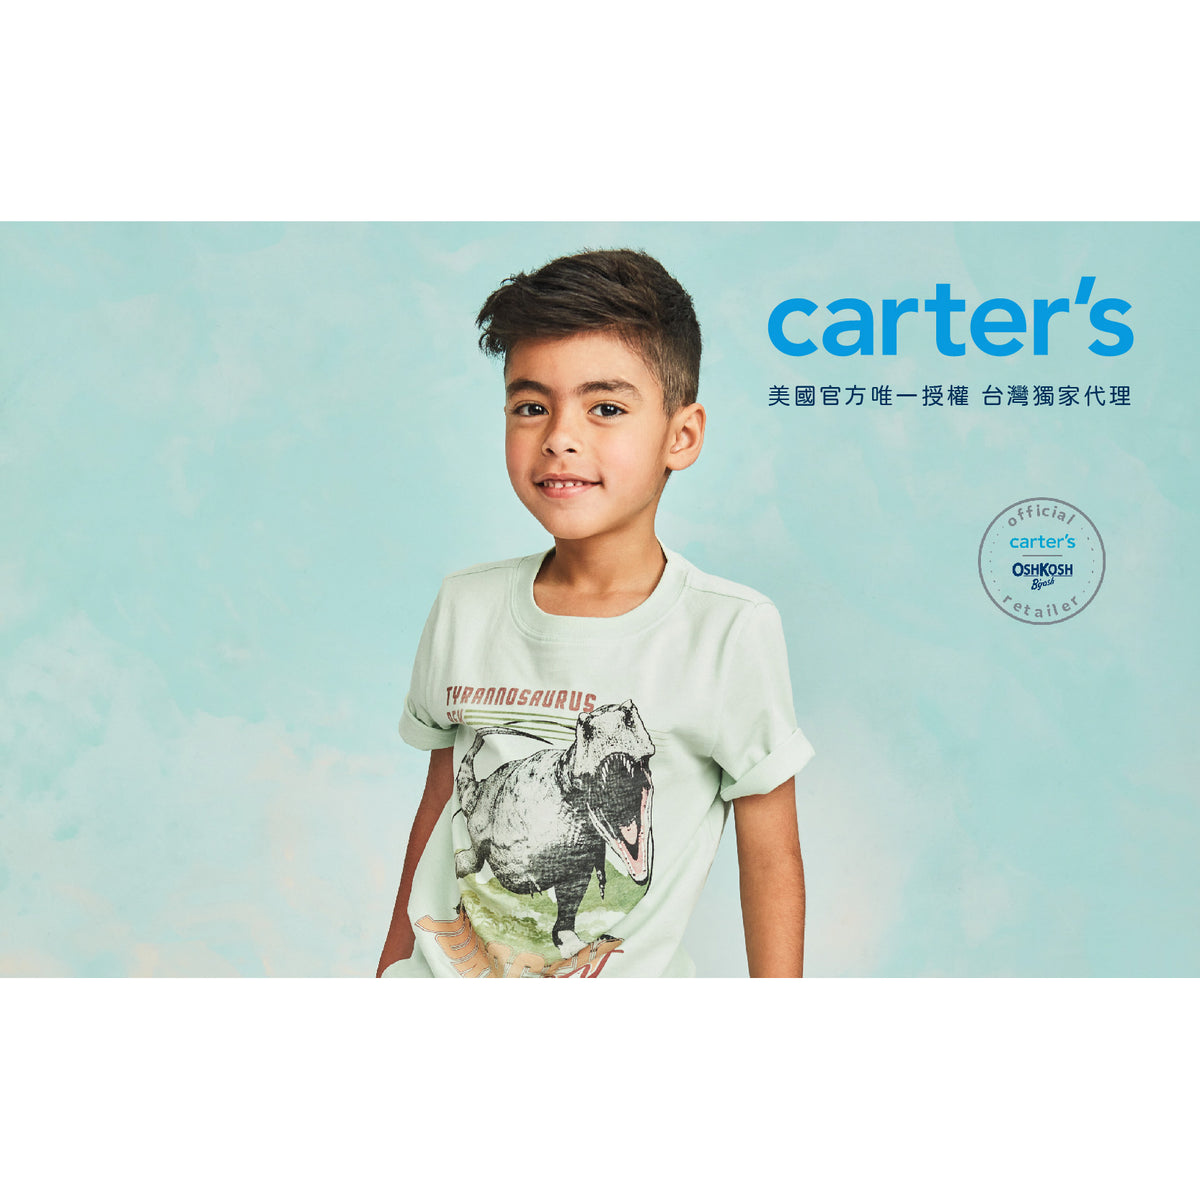 Carter's 卡其迷彩長褲(6-8)